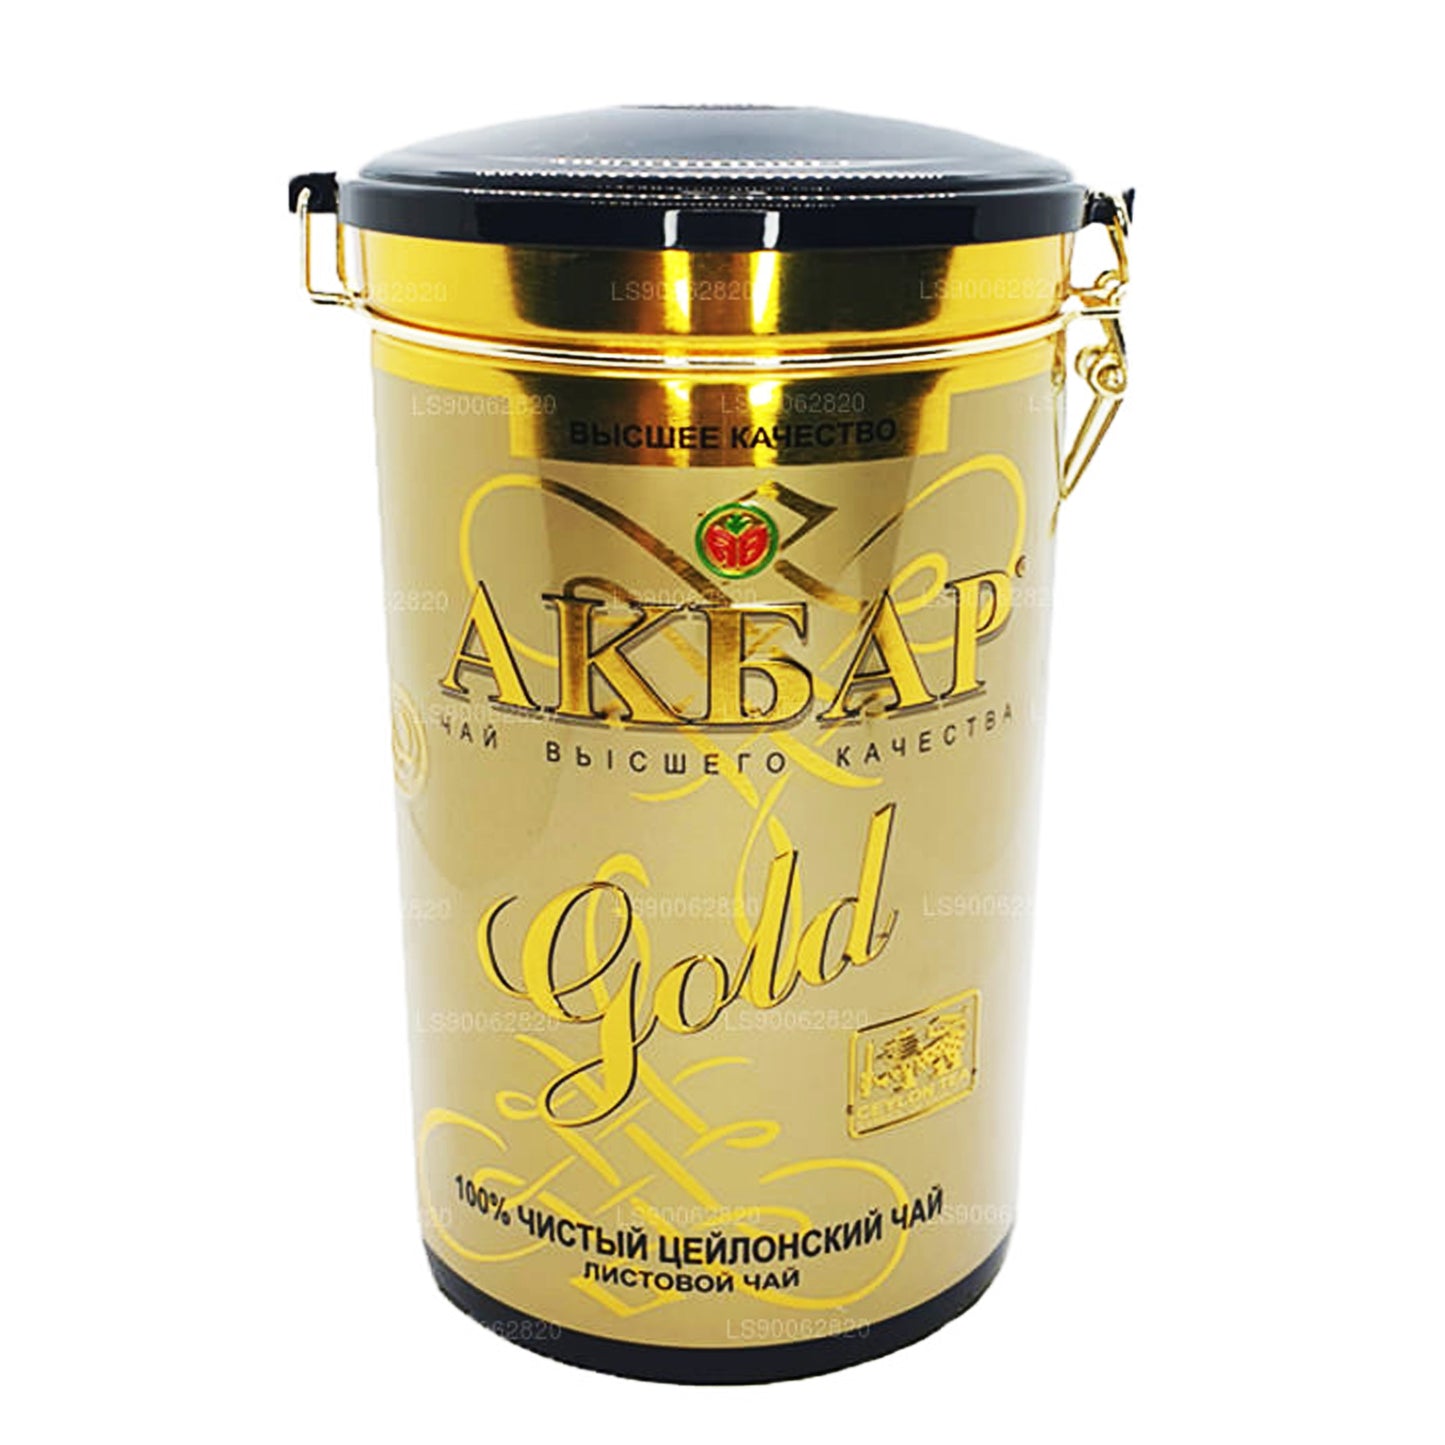 Akbar Gold Leaf-thee (450 g)